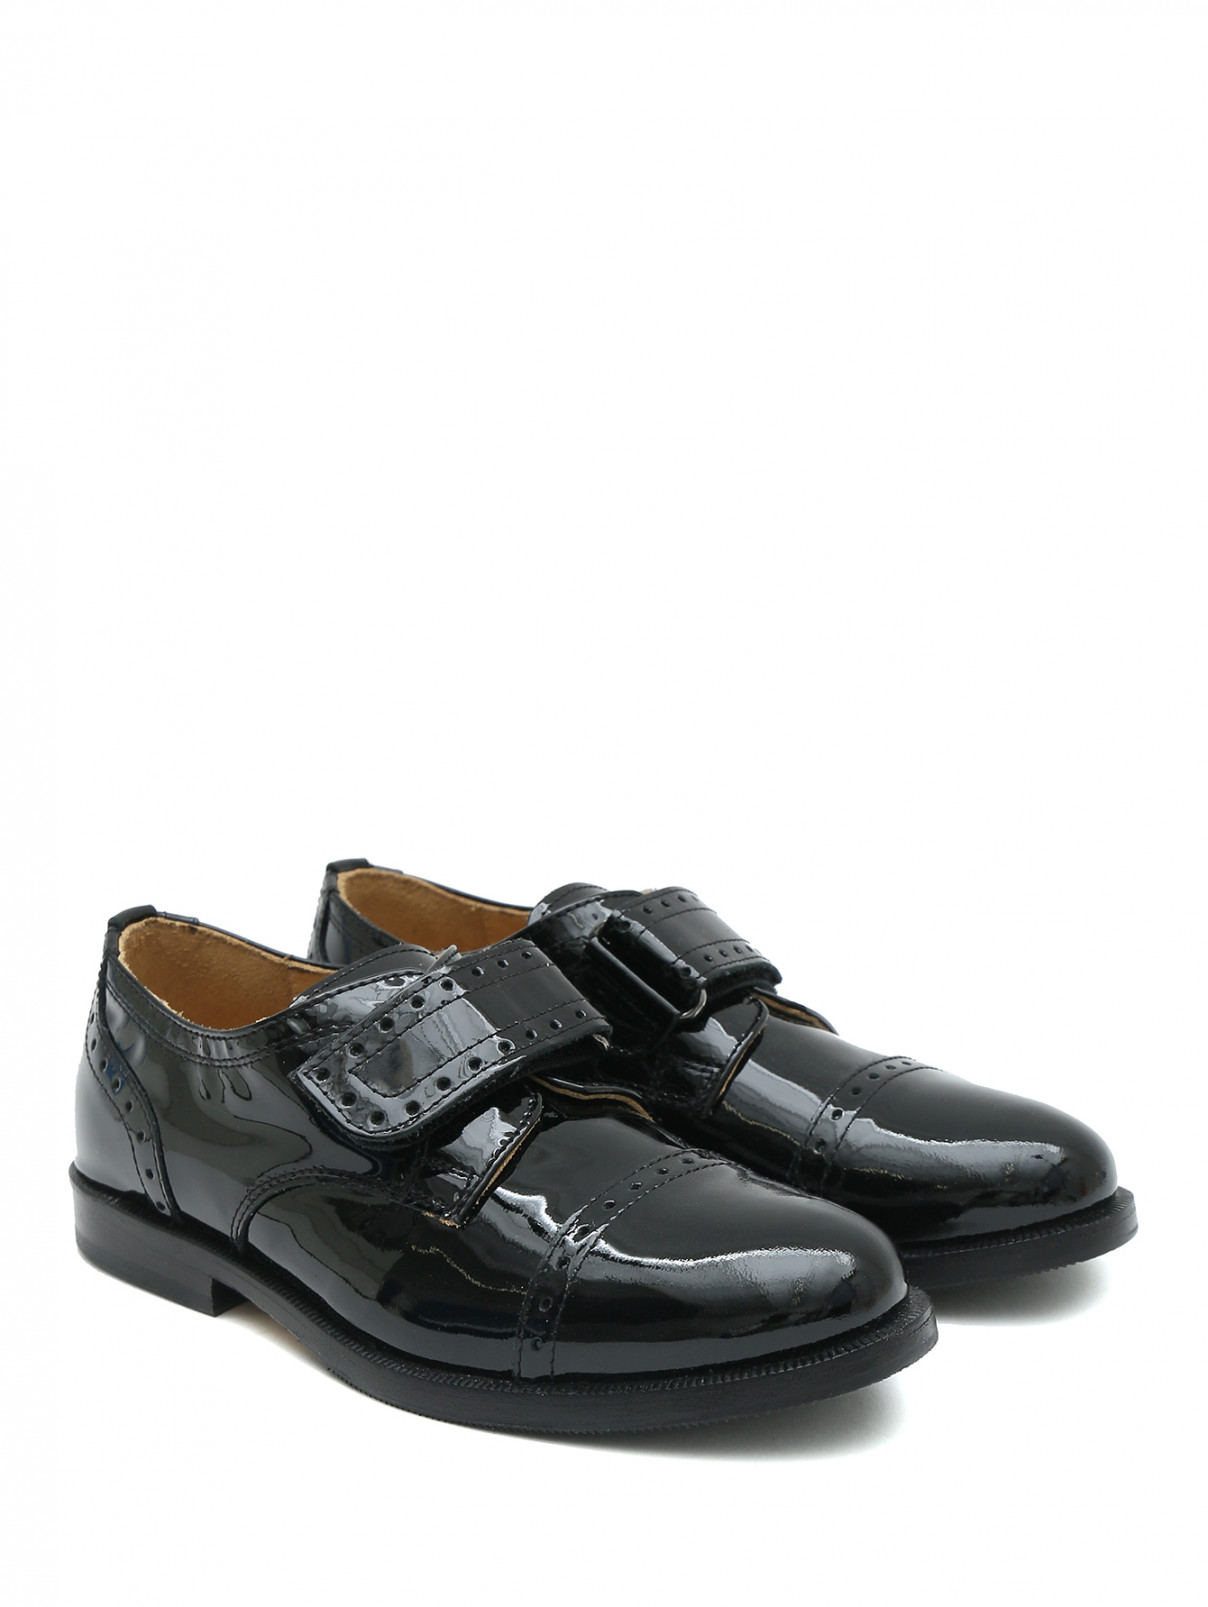 Лакированные туфли на липучке Zecchino d`Oro  –  Общий вид  – Цвет:  Черный